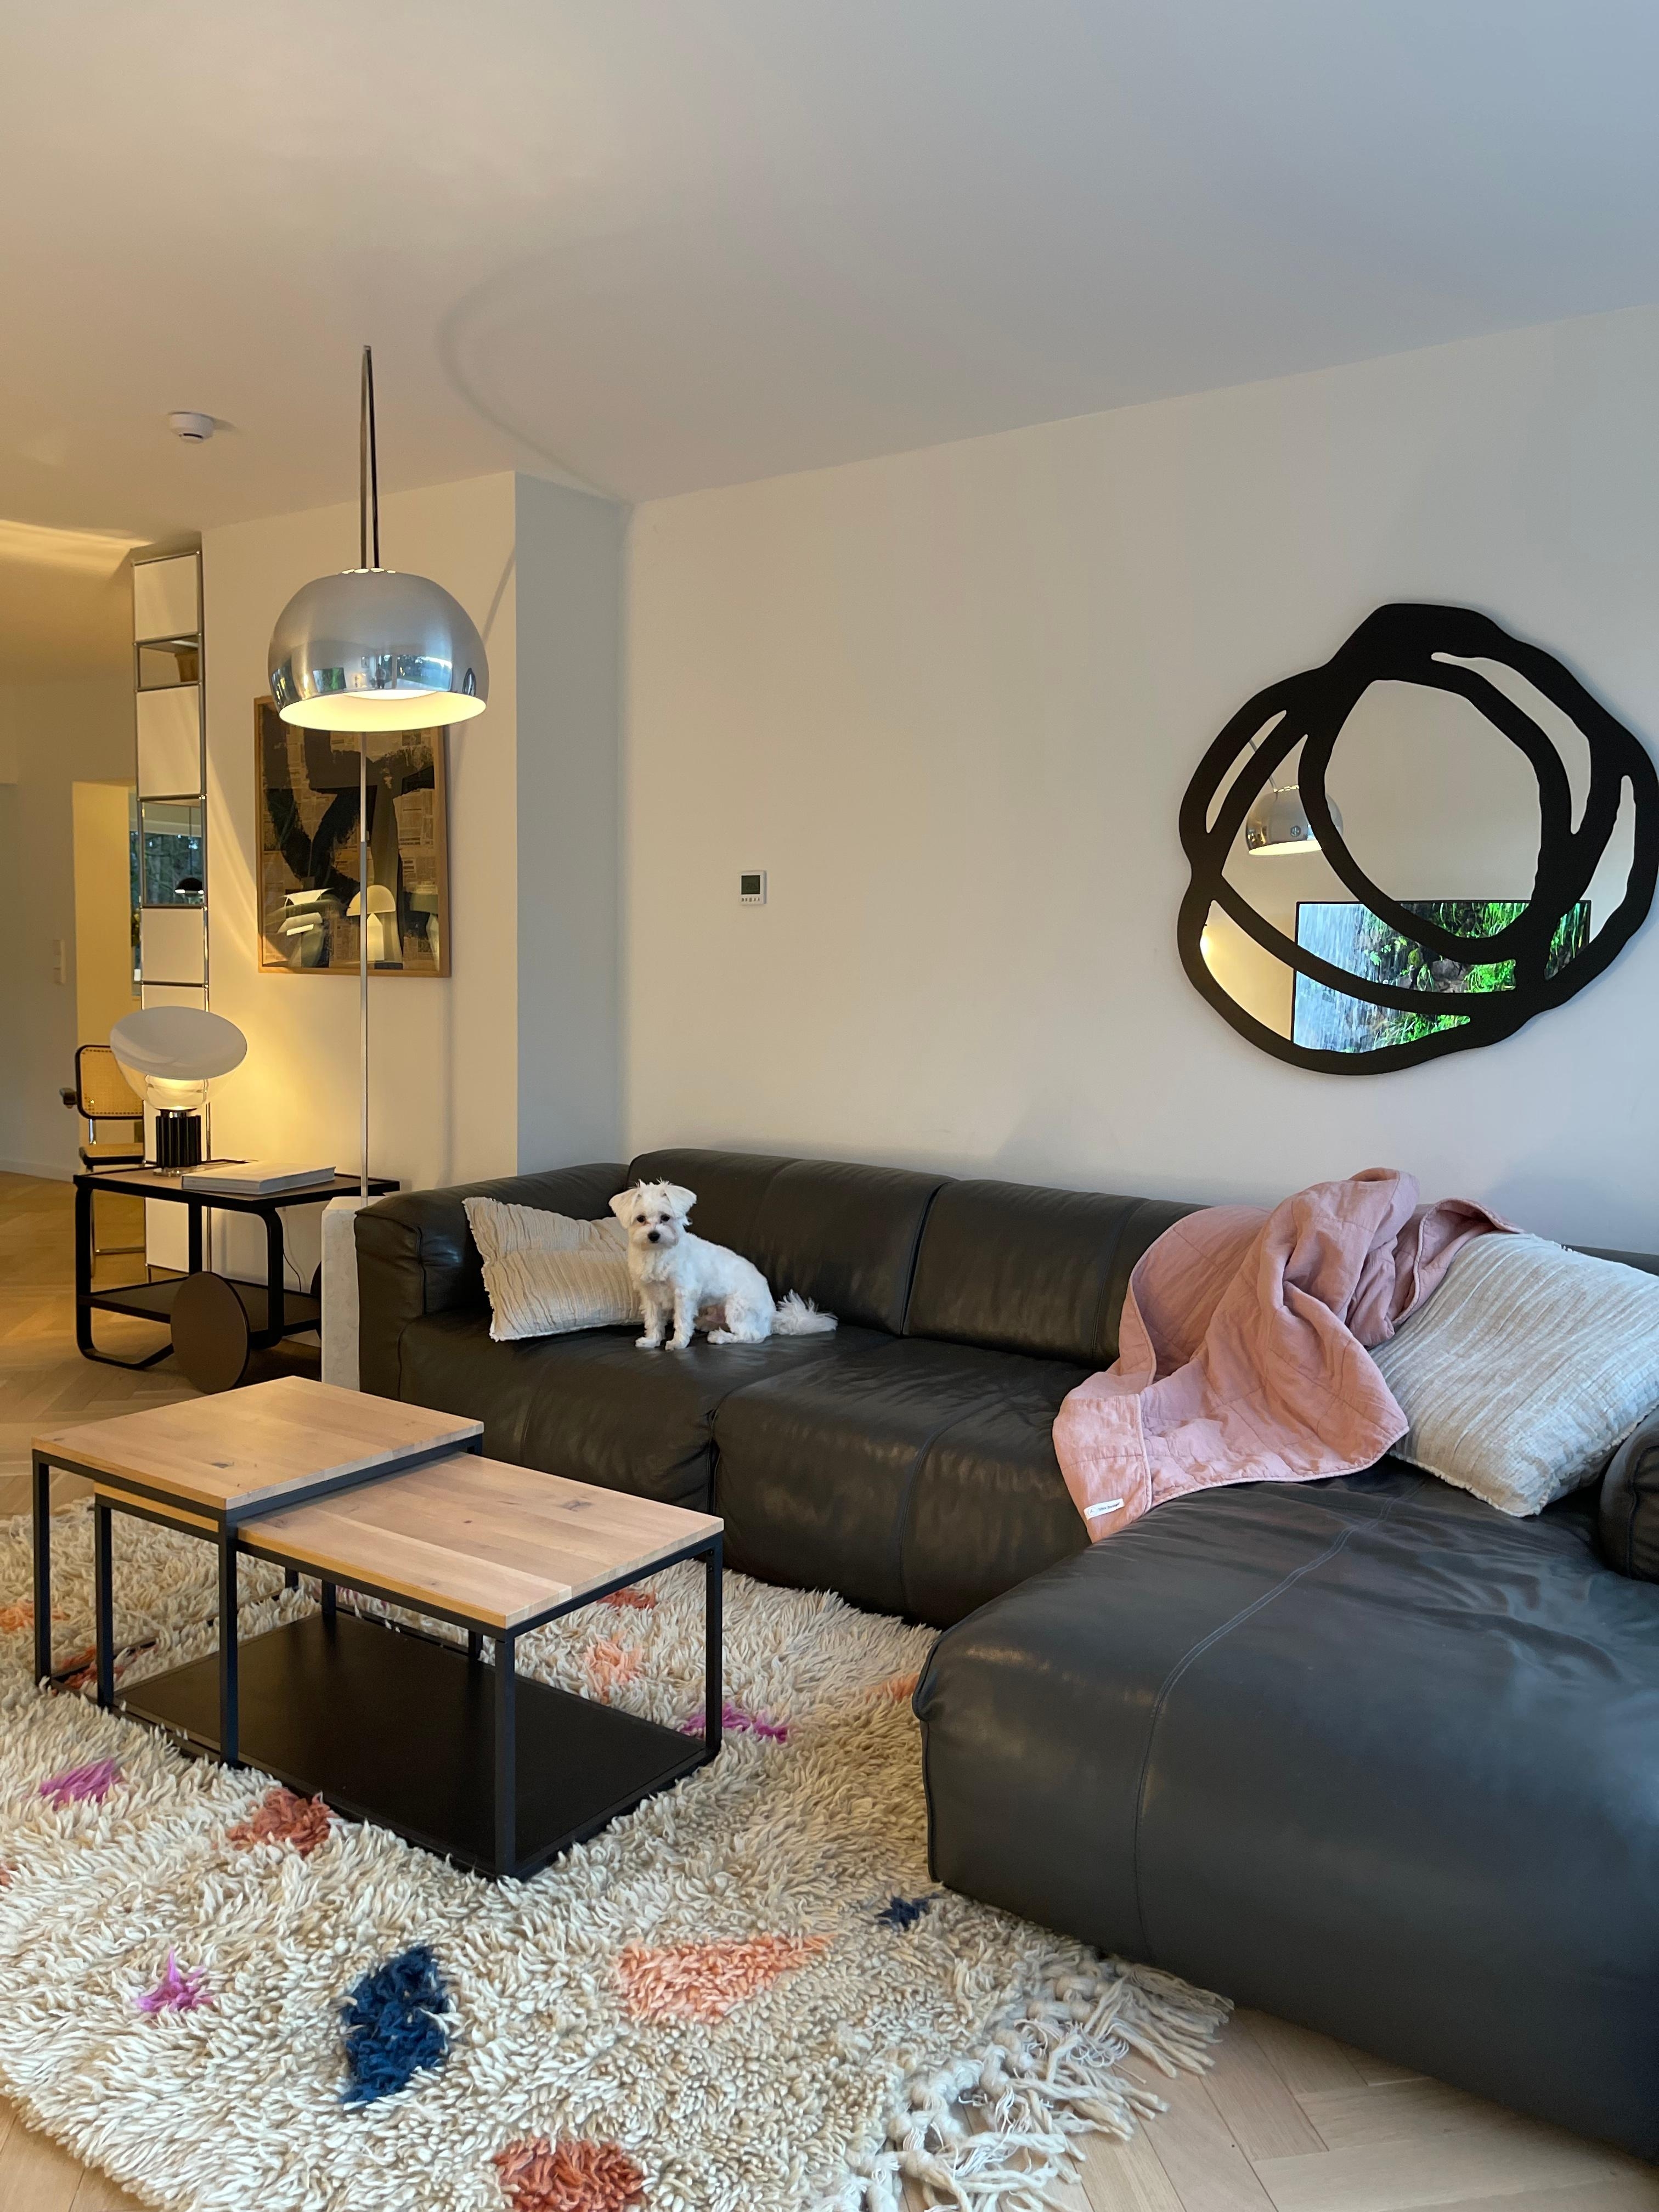 #couchliebt #sofa #spiegel #wohnzimmer 